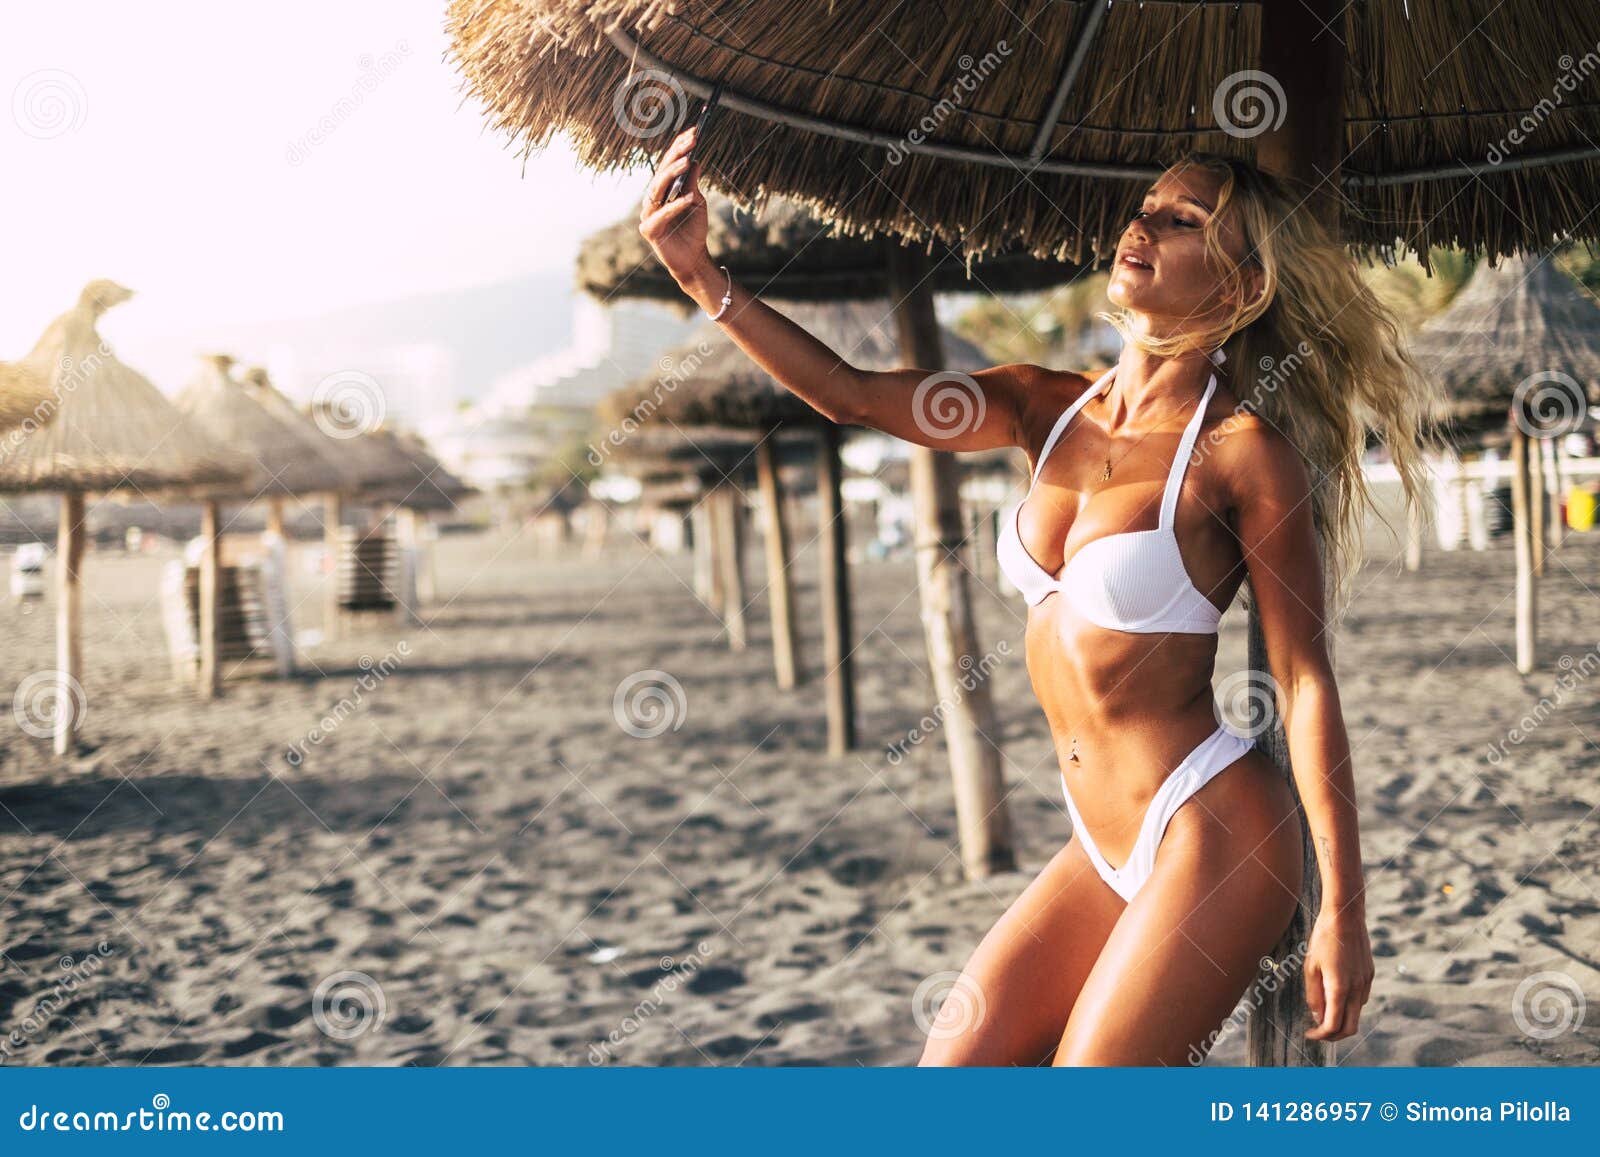 sexy women beach selfie